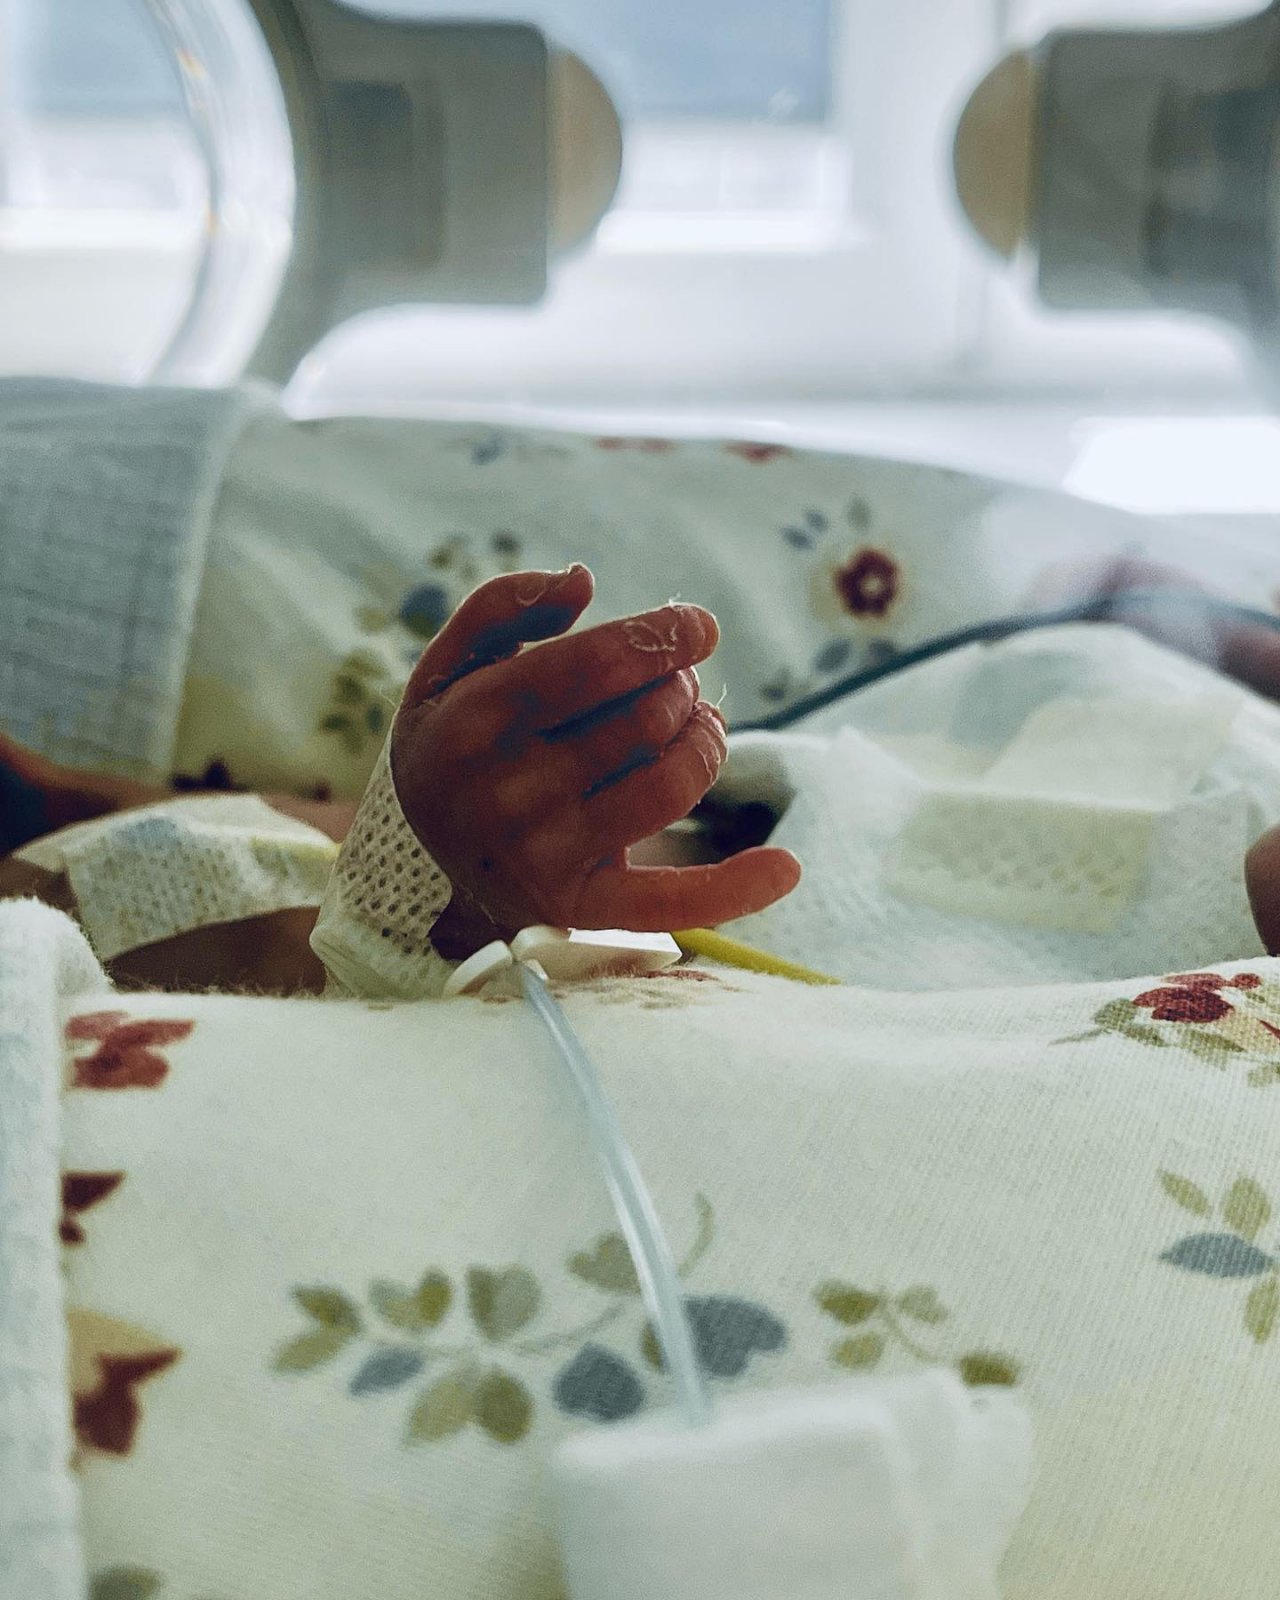 zdjęcie maleńskiej rączki dziecka przebywającego w inkubatorze